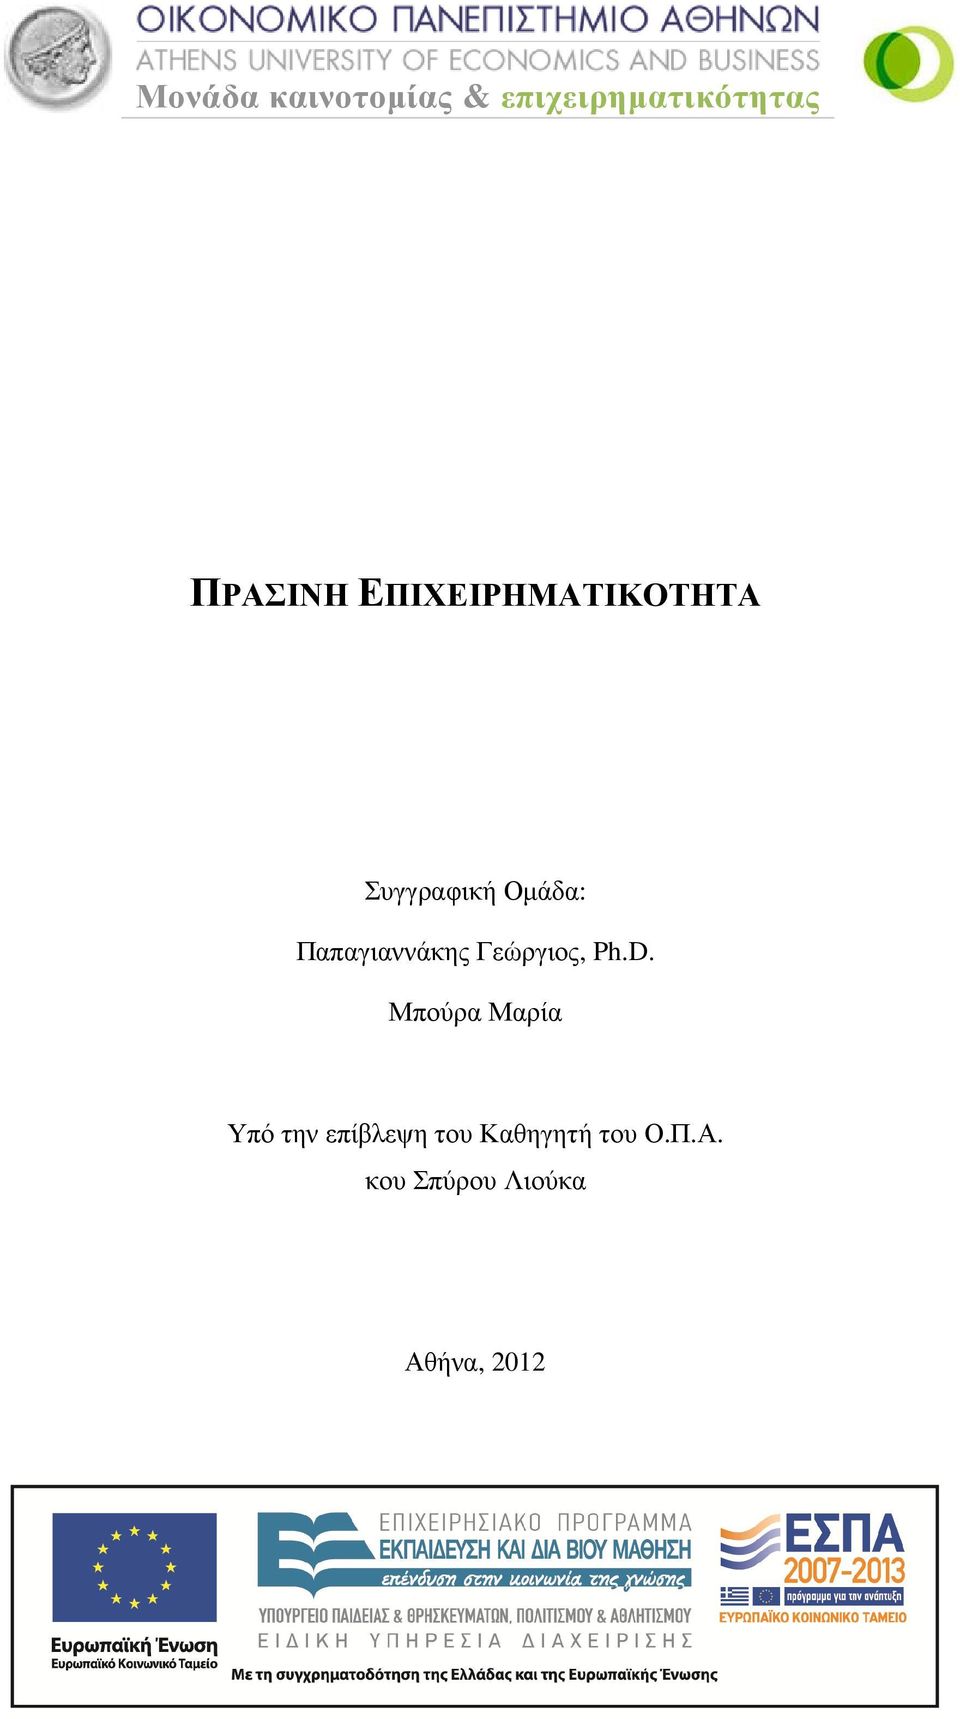 Παπαγιαννάκης Γεώργιος, Ph.D.